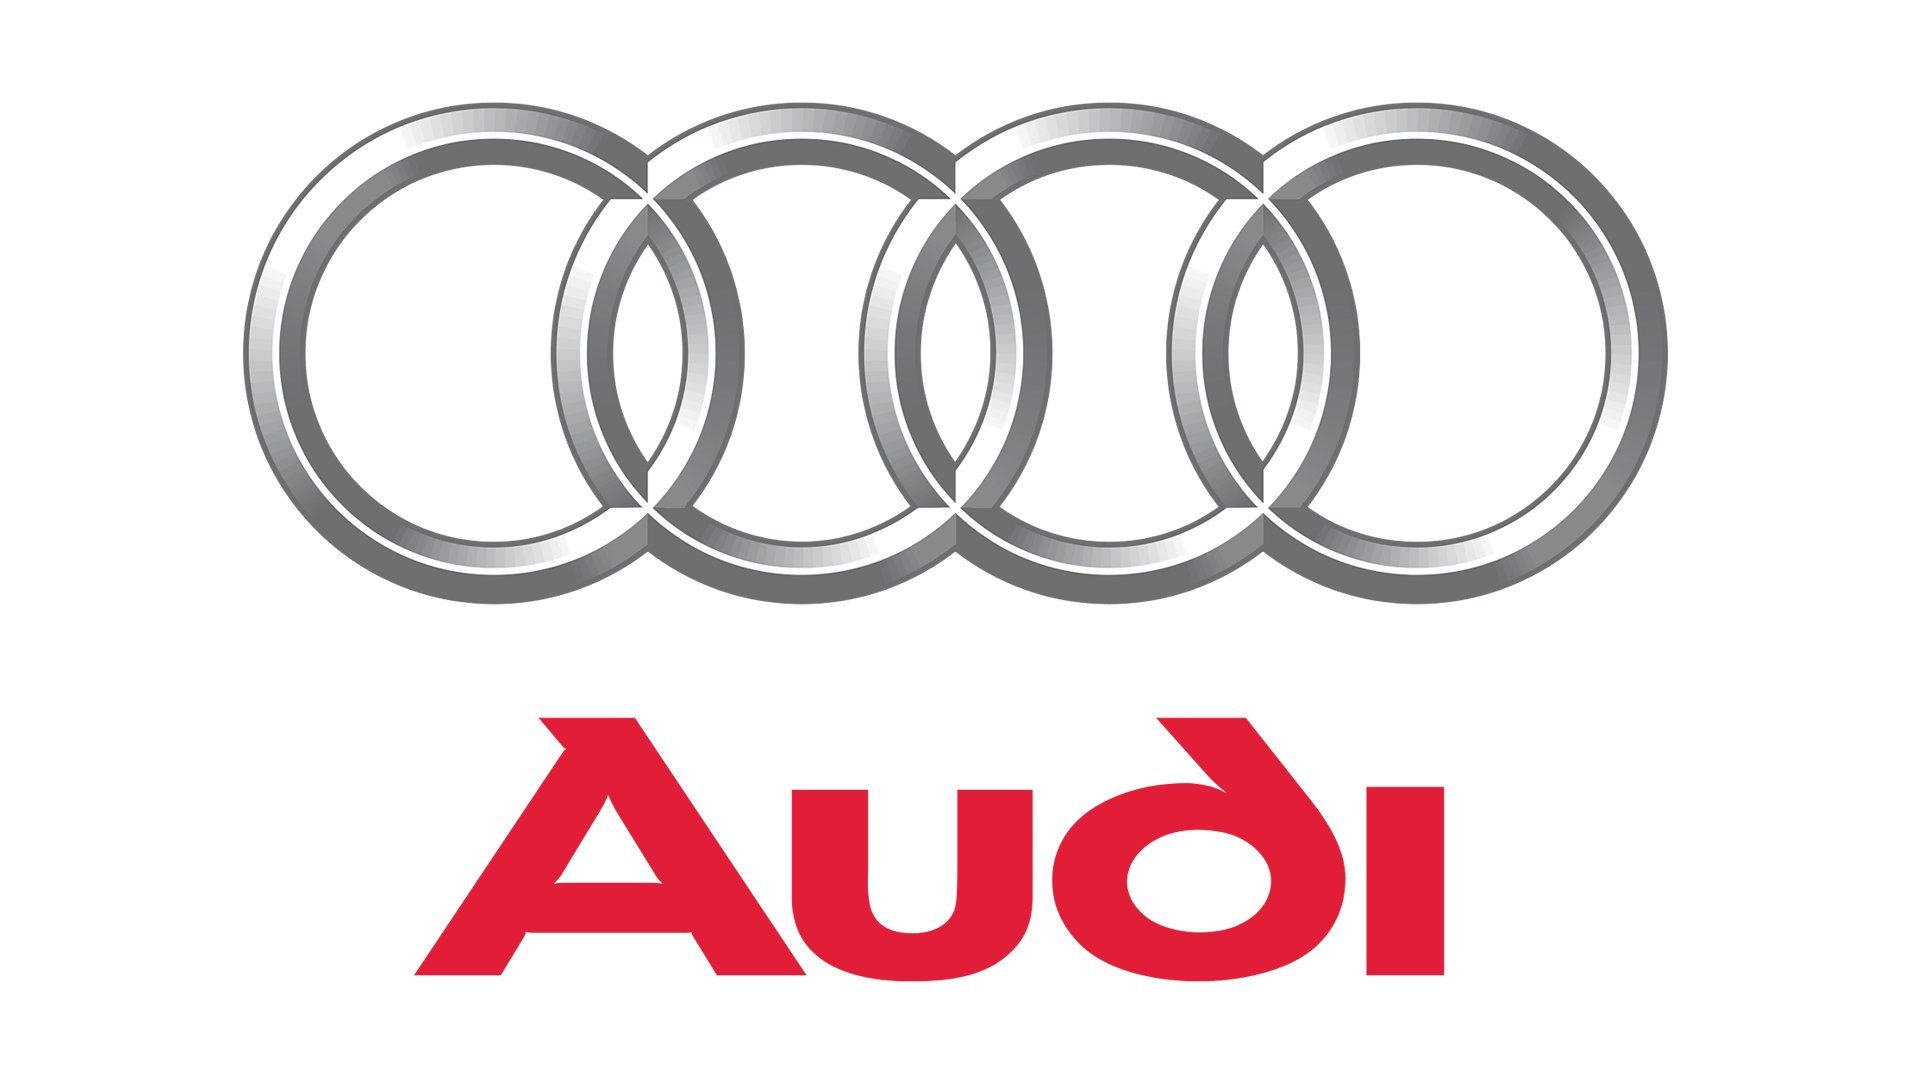 Color-Audi-logo.jpg